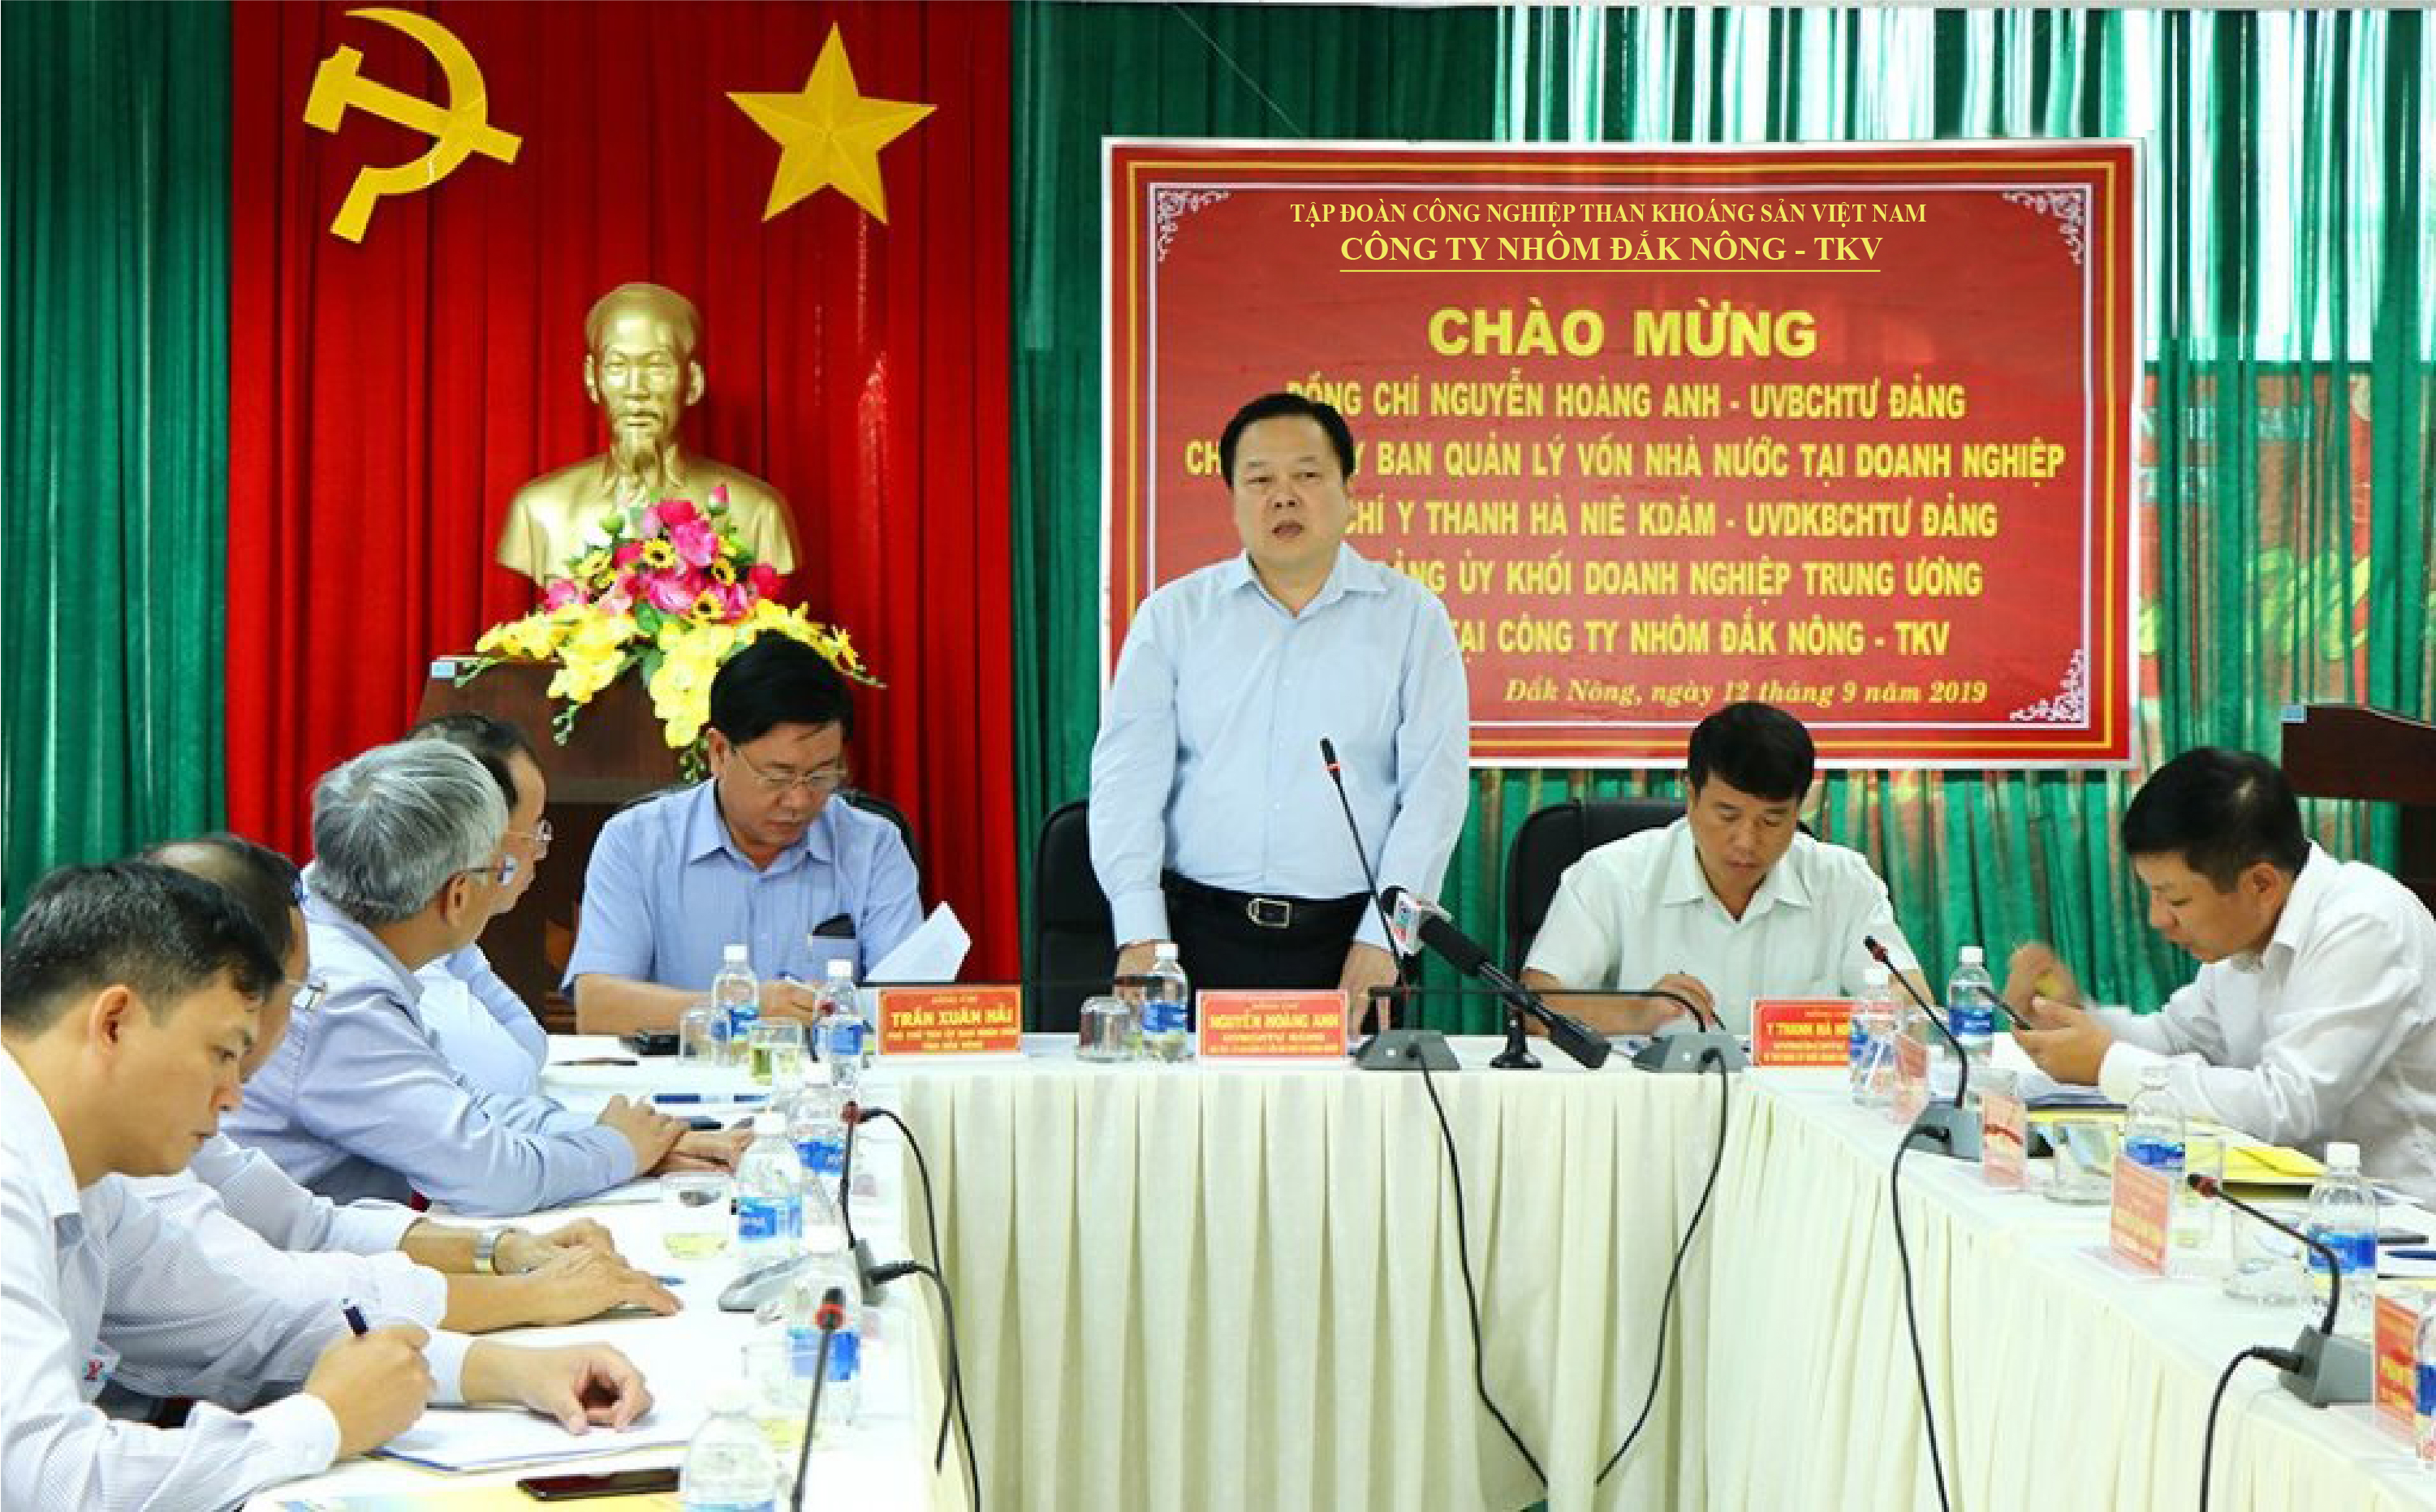 Đồng chí Nguyễn Hoàng Anh đề nghị Công ty Nhôm Đắk Nông-TKV phải có chiến lược phát triển lâu dài